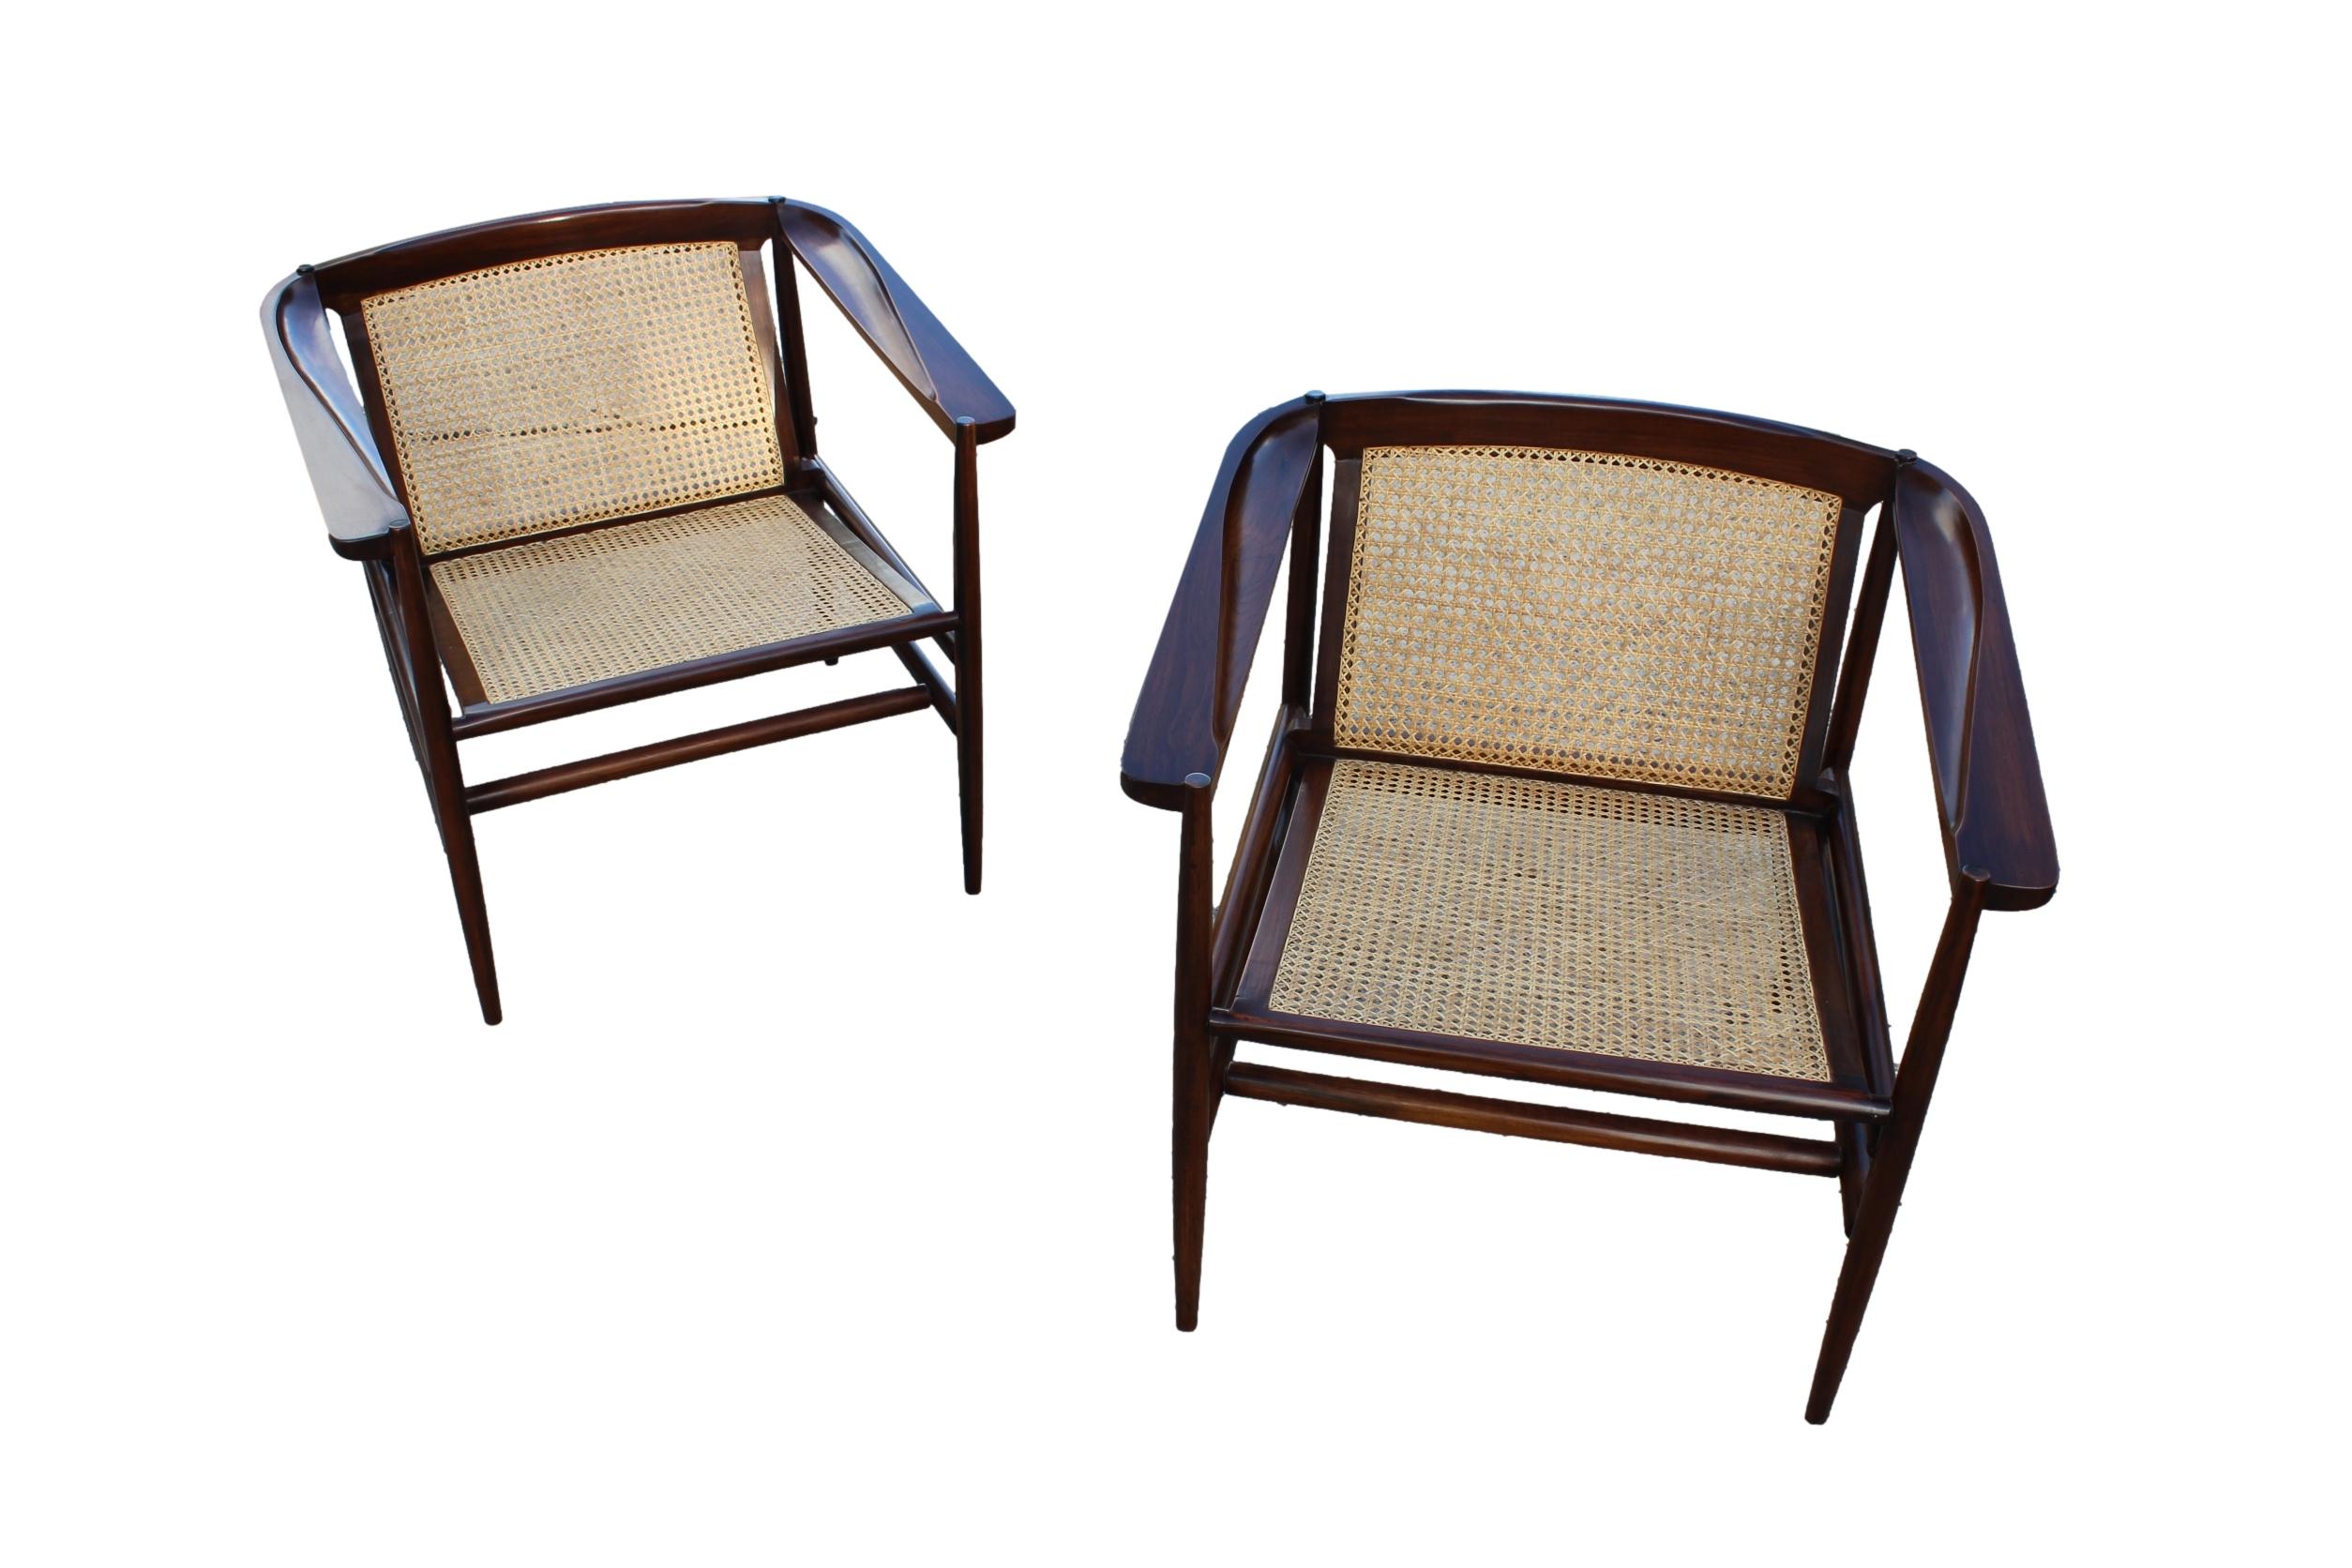 Le fauteuil iconique et intemporel dont le design est attribué à Joaquim Tenreiro est désormais disponible avec un magnifique cannage.

Il a été restauré et est maintenant prêt à l'emploi.

P.S. Les couleurs peuvent varier.

Cet article ne présente